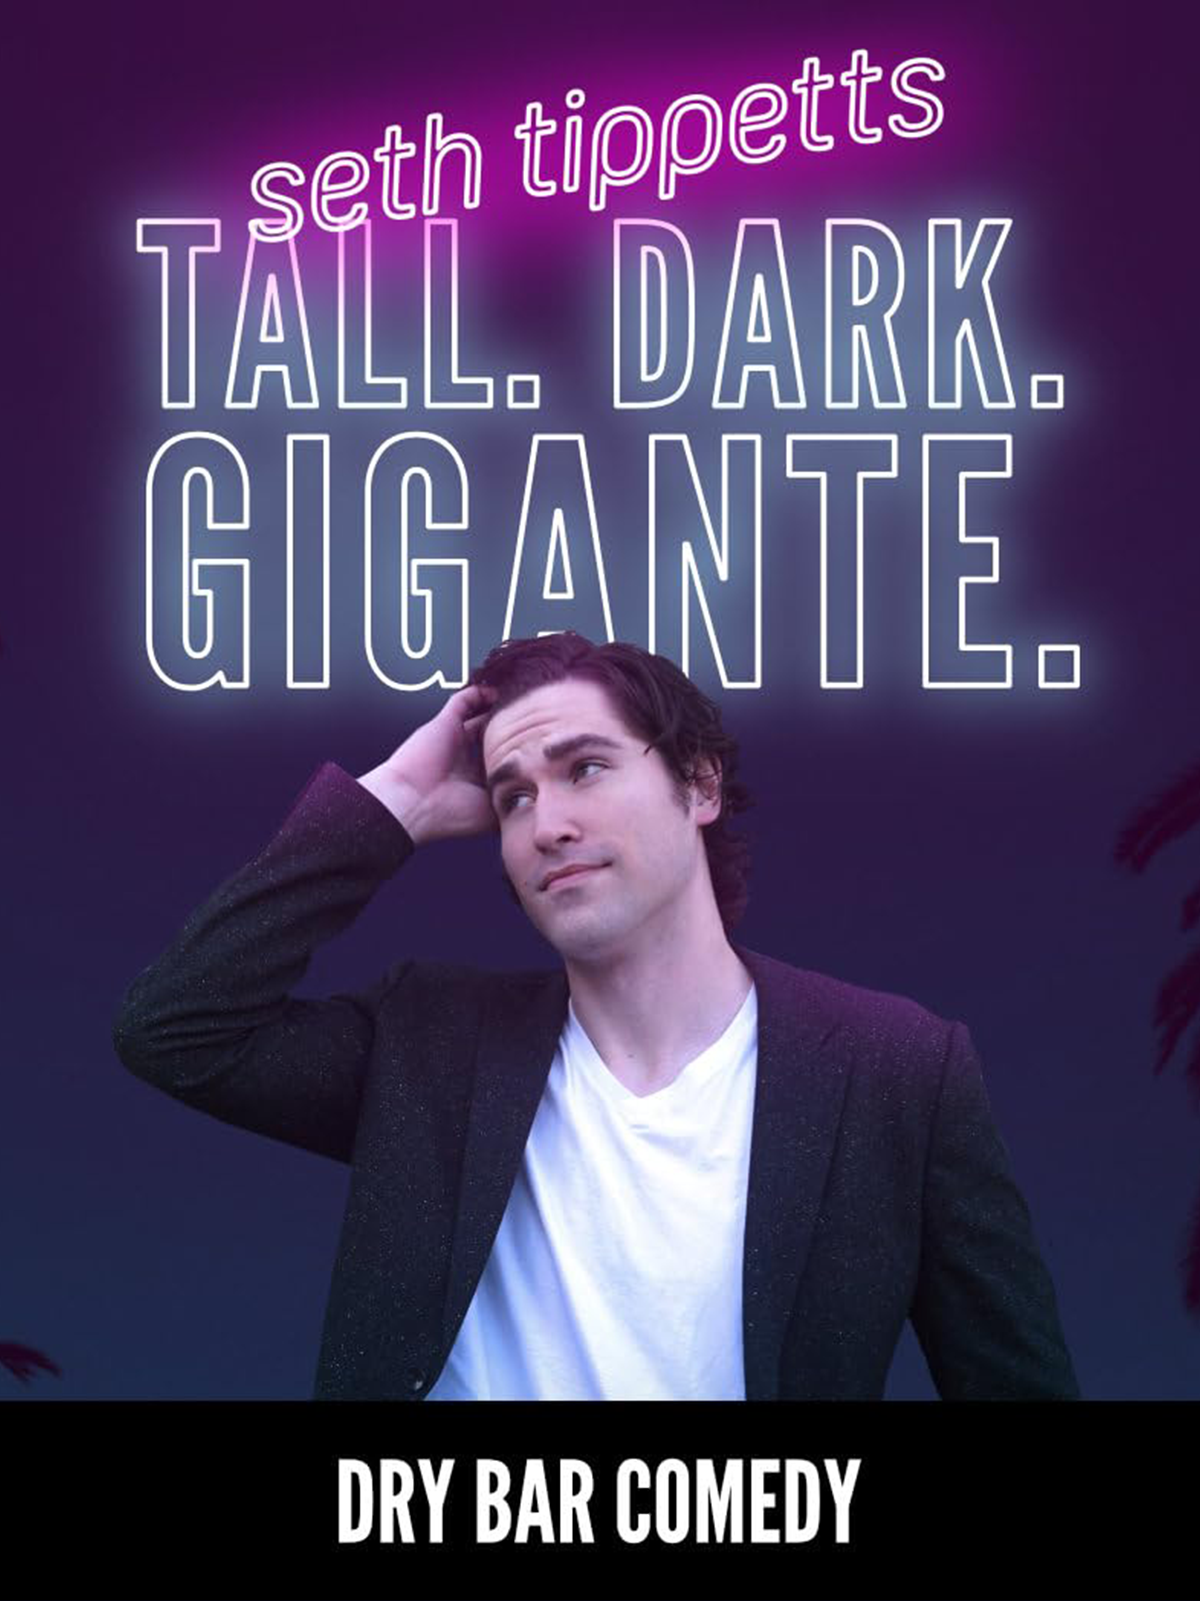 Tall. Dark. Gigante